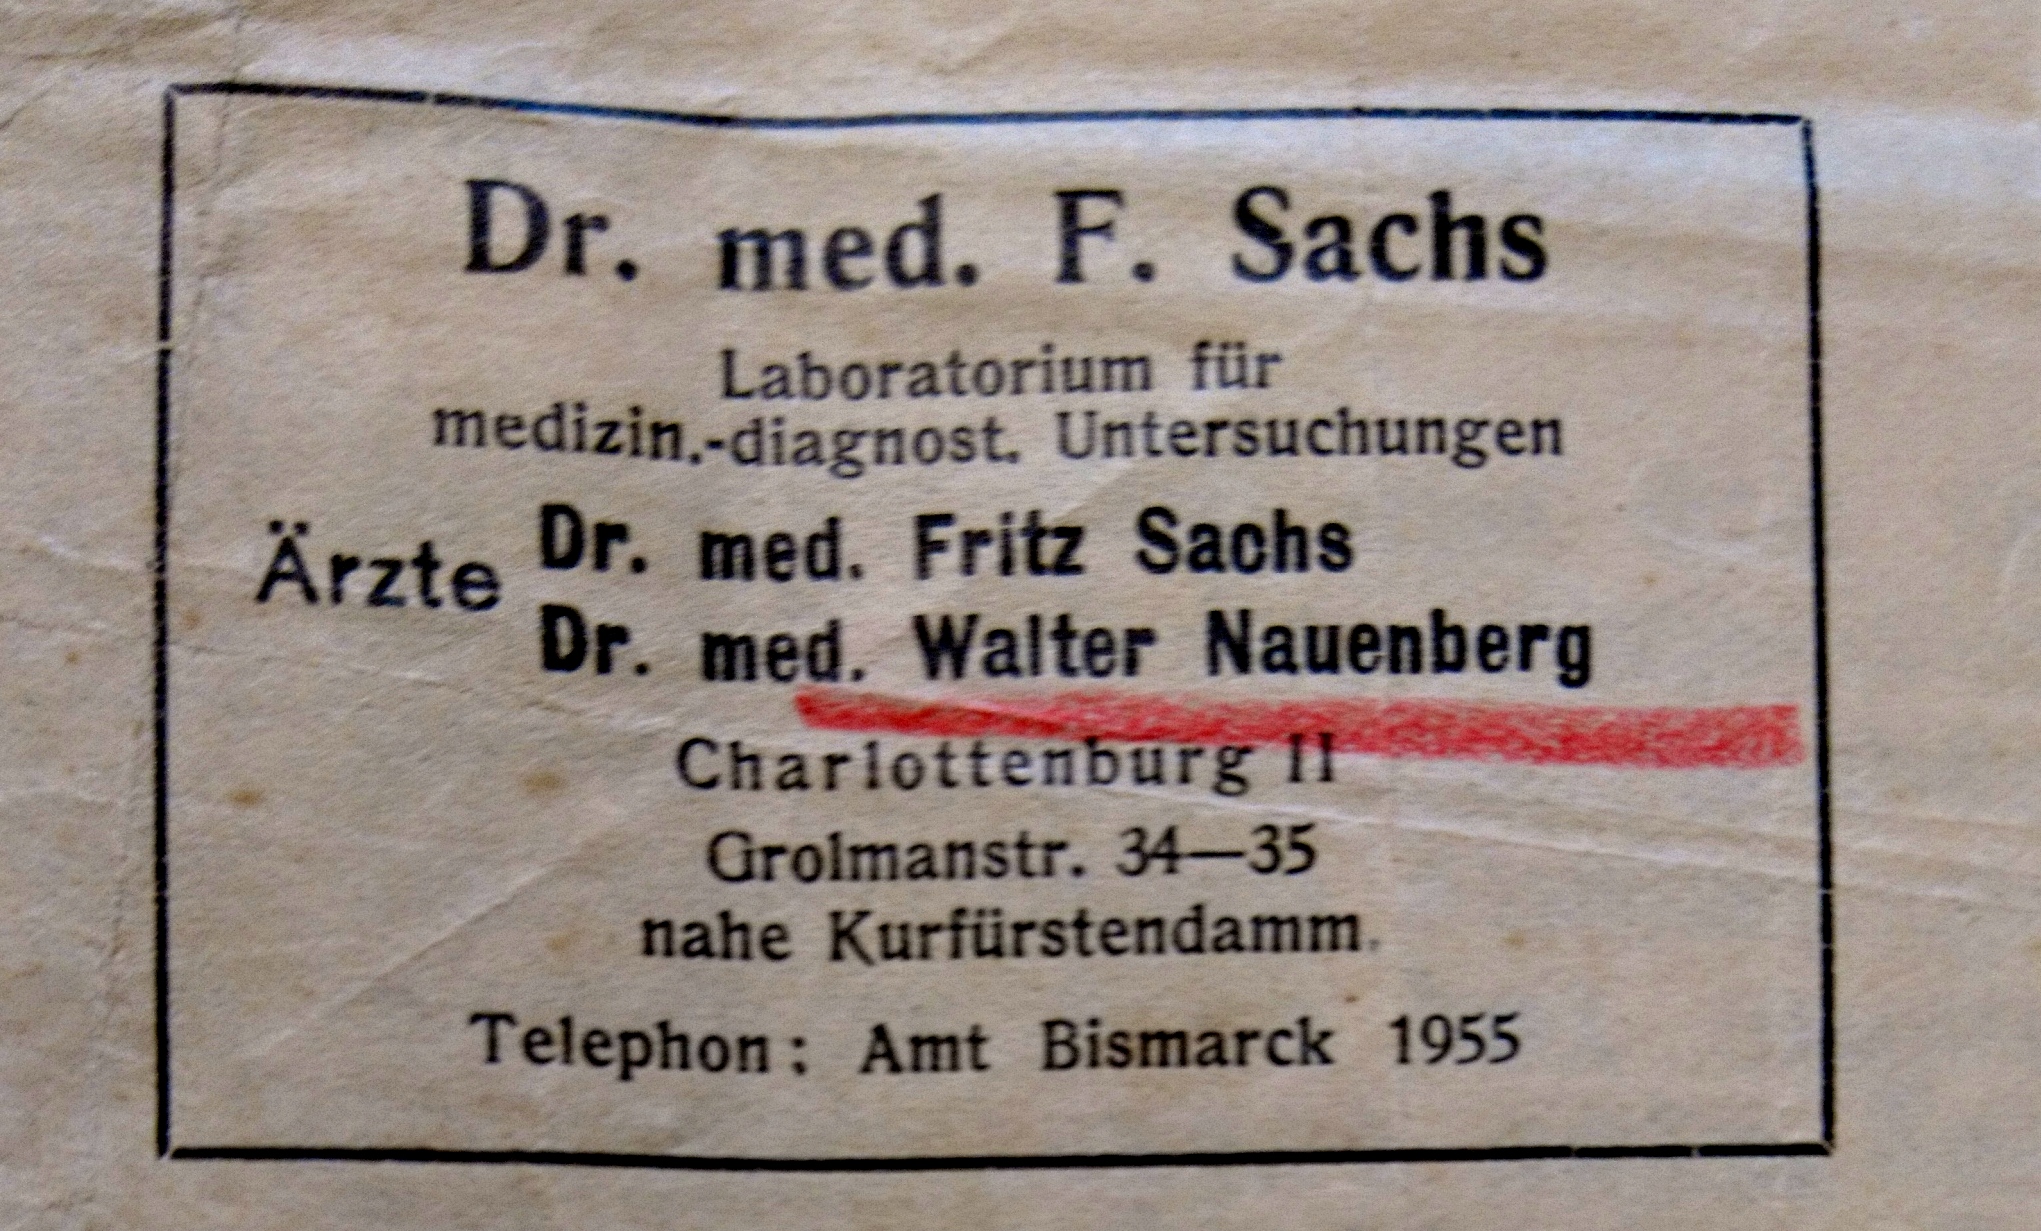 Praxis Dr. Fritz Sachs / Dr. W. Nauenberg, Berlin. Bildquelle Entschädigungsbehörde Berlin